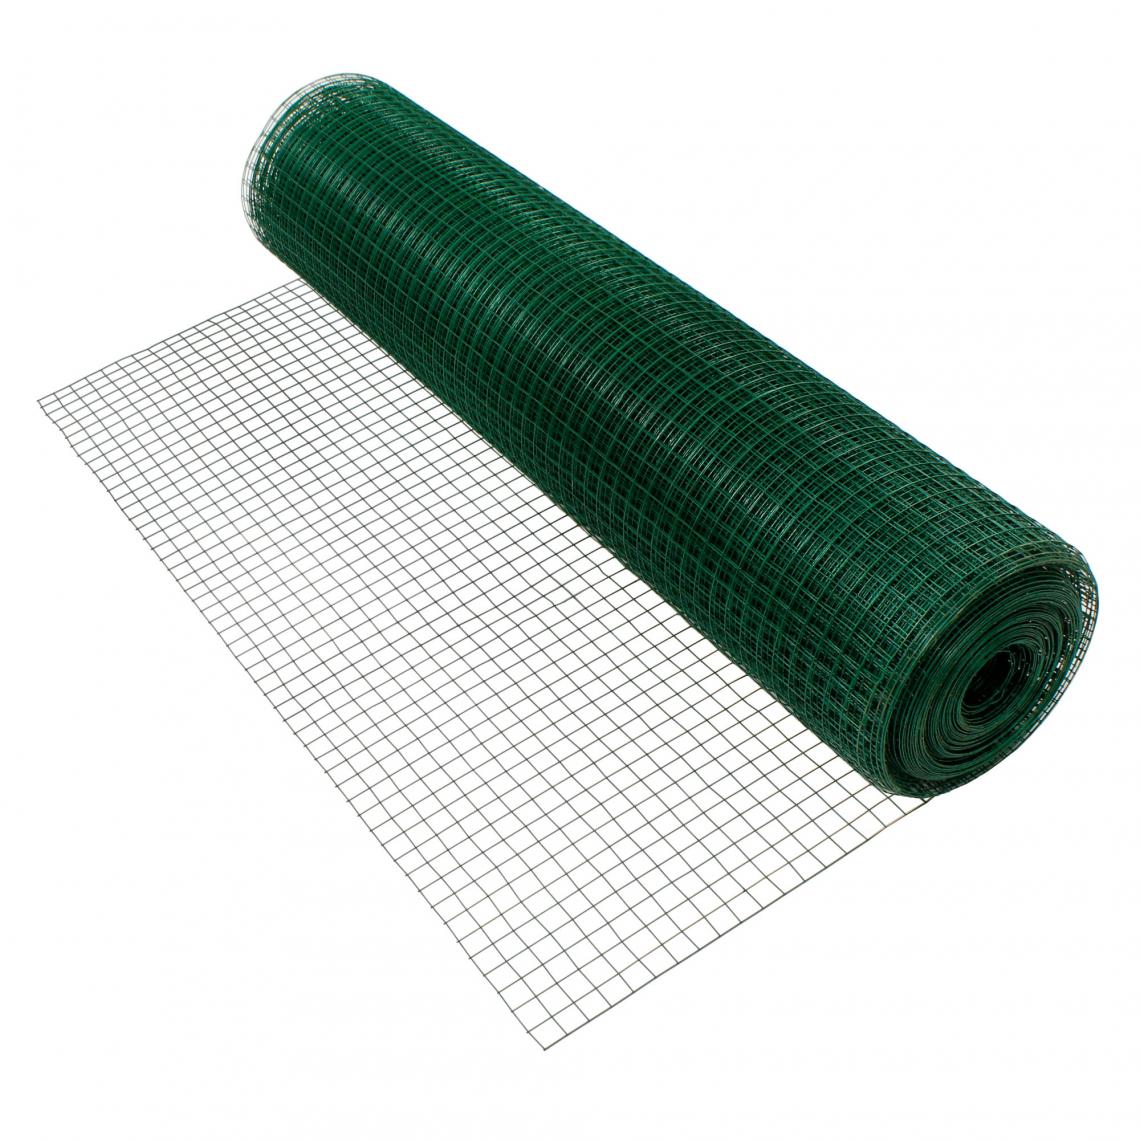 Ecd Germany - Grillage maille de jardin vert clôture fil volière flexible 1,2 mm 19x19 mm 10m - Clôture grillagée